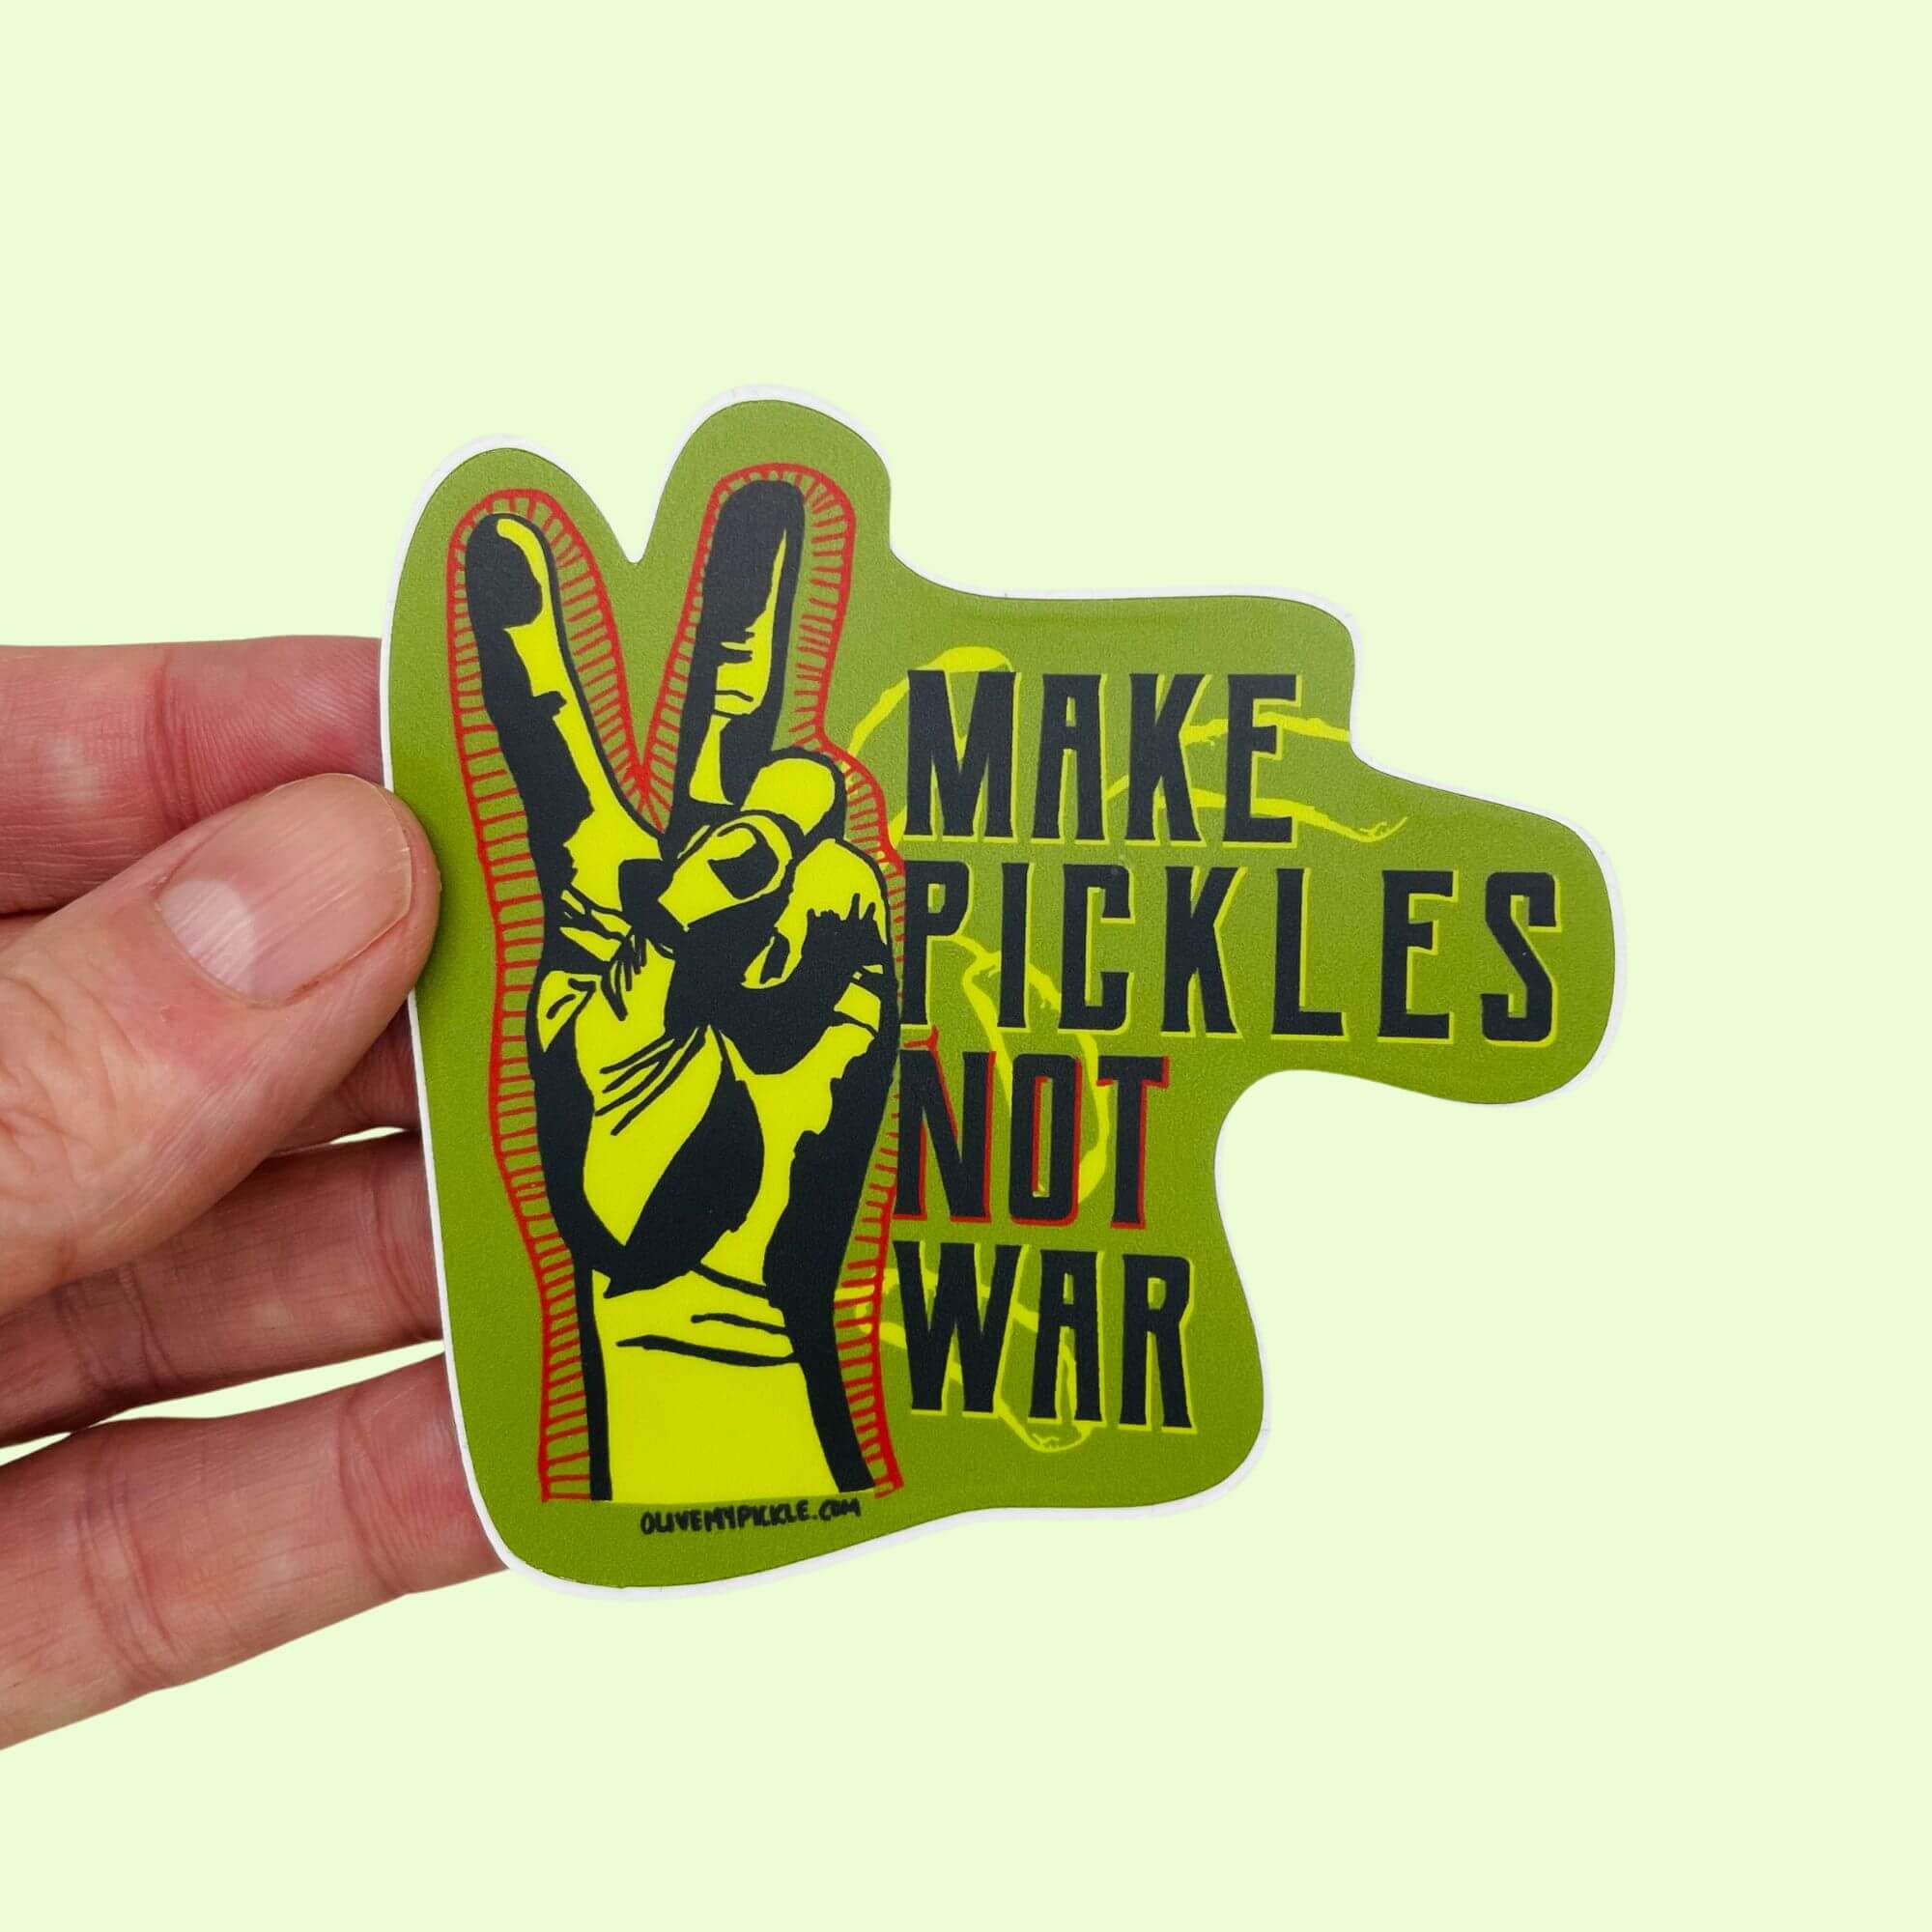 Classic Make pickles not war Sticker